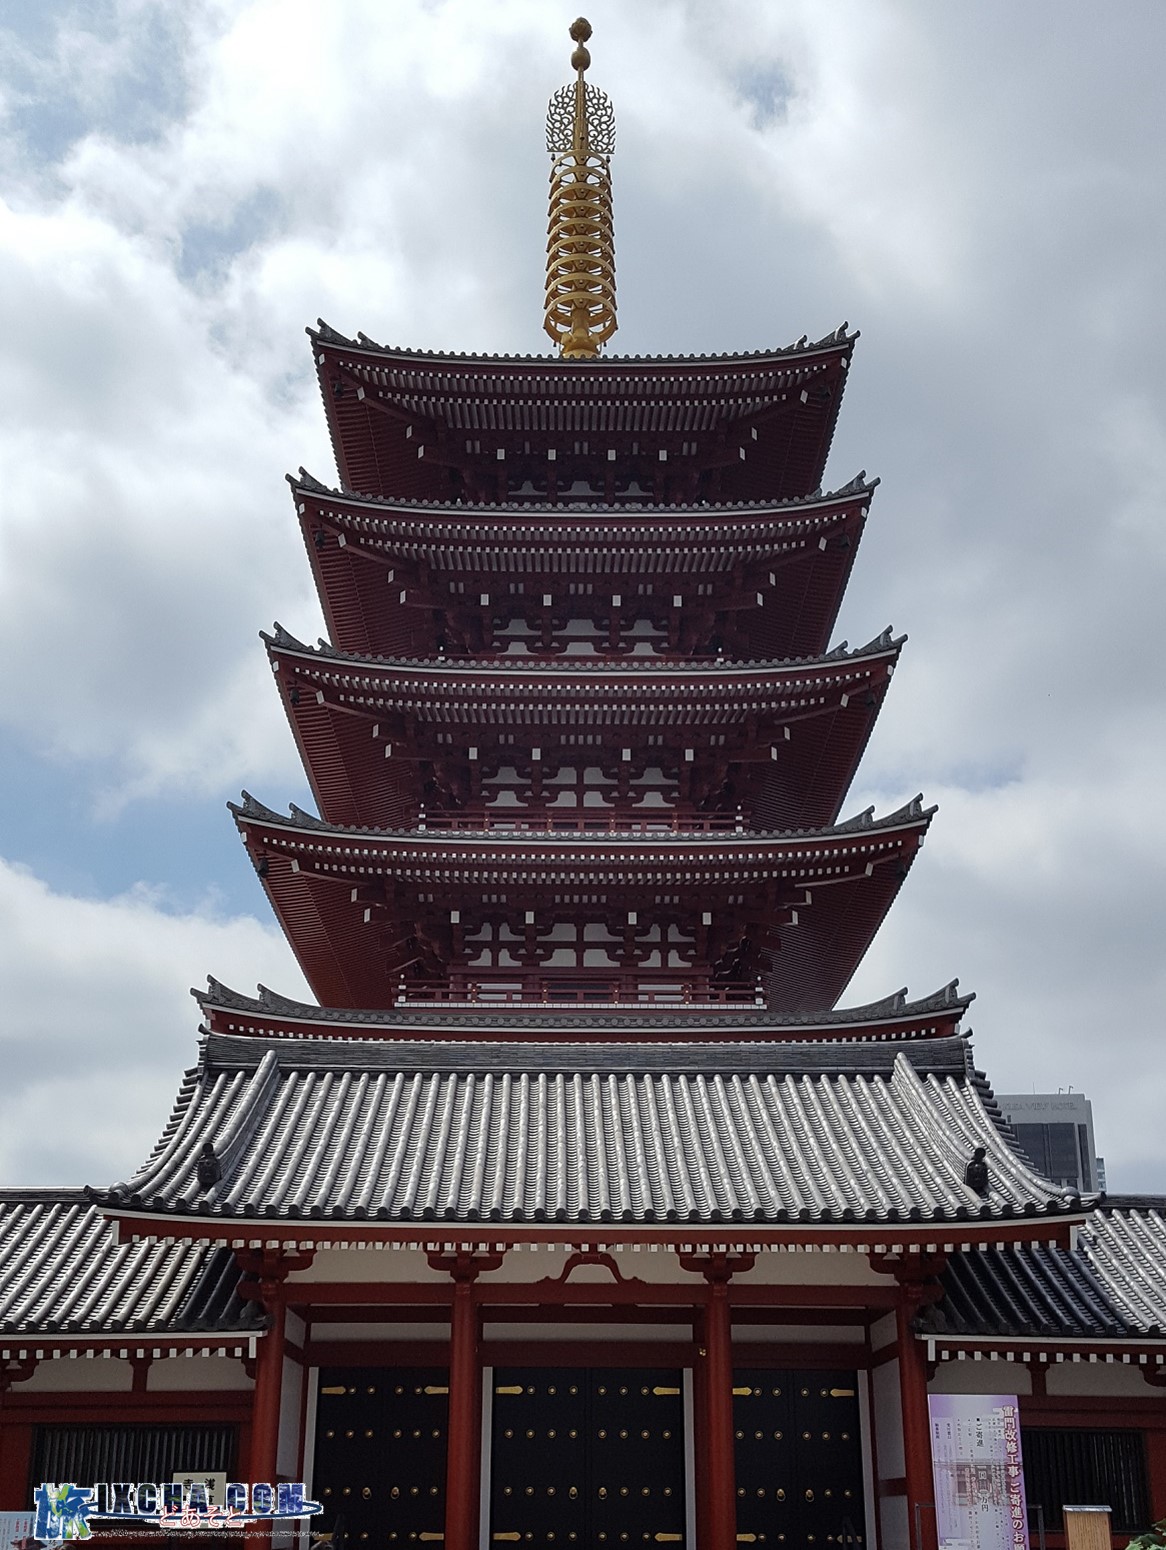 浅草寺境内にそびえ立つ高さ48㍍の「五重塔」も現在は、鉄筋コンクリート造りで昭和48年に再建されたものです。　元々は、942年に平公雅（たいらのみんまさ）によって建立されたと伝わり、長い歴史の中幾度と焼失と再建を繰り返し、最後は昭和20年の東京大空襲で焼失しました。　塔内部には、位牌が並べられた祭壇があり、宗派や宗教を問わない供養が行われています。　その中には、ダイアナ皇太子妃（元）の位牌もあり、「ちがうだろーっ（キリスト教でしょ）、このハゲーっ（絶対親族じゃない）」と思ってしまいますが、供養したいとの思いがあれば（有料）誰でも供養して頂けるそうです。　ちなみに「五重塔」は、外観は五階建てにも見えるが、内部は心柱が通る空洞で実際には登れる構造ではないんです。　これは、建物として機能しているものではなく、あくまでも供養塔として存在自体に意味がある建造物なのです。